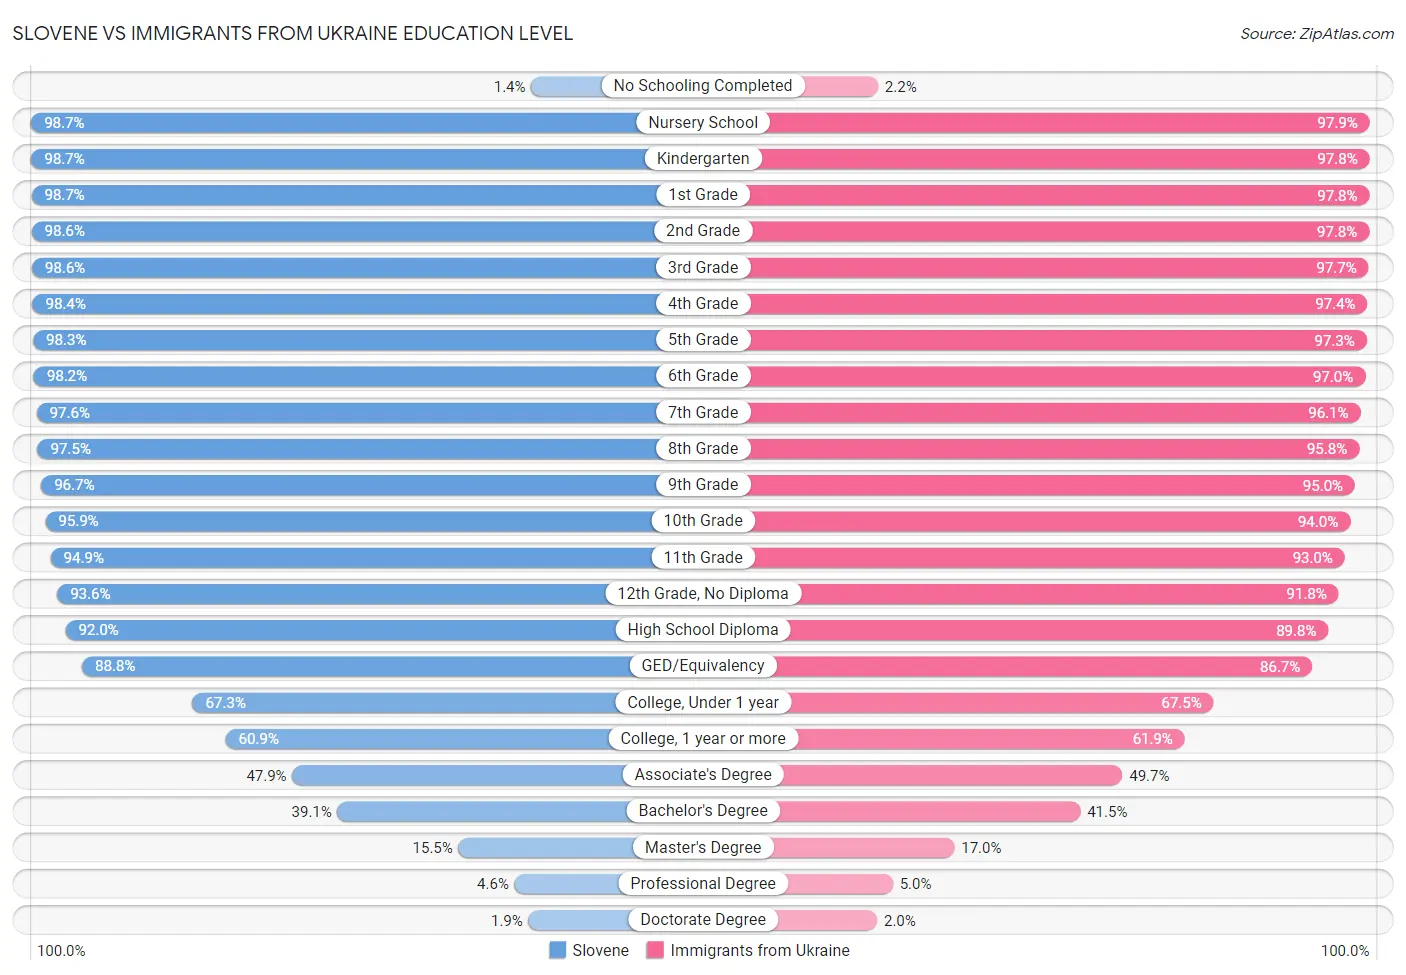 Slovene vs Immigrants from Ukraine Education Level